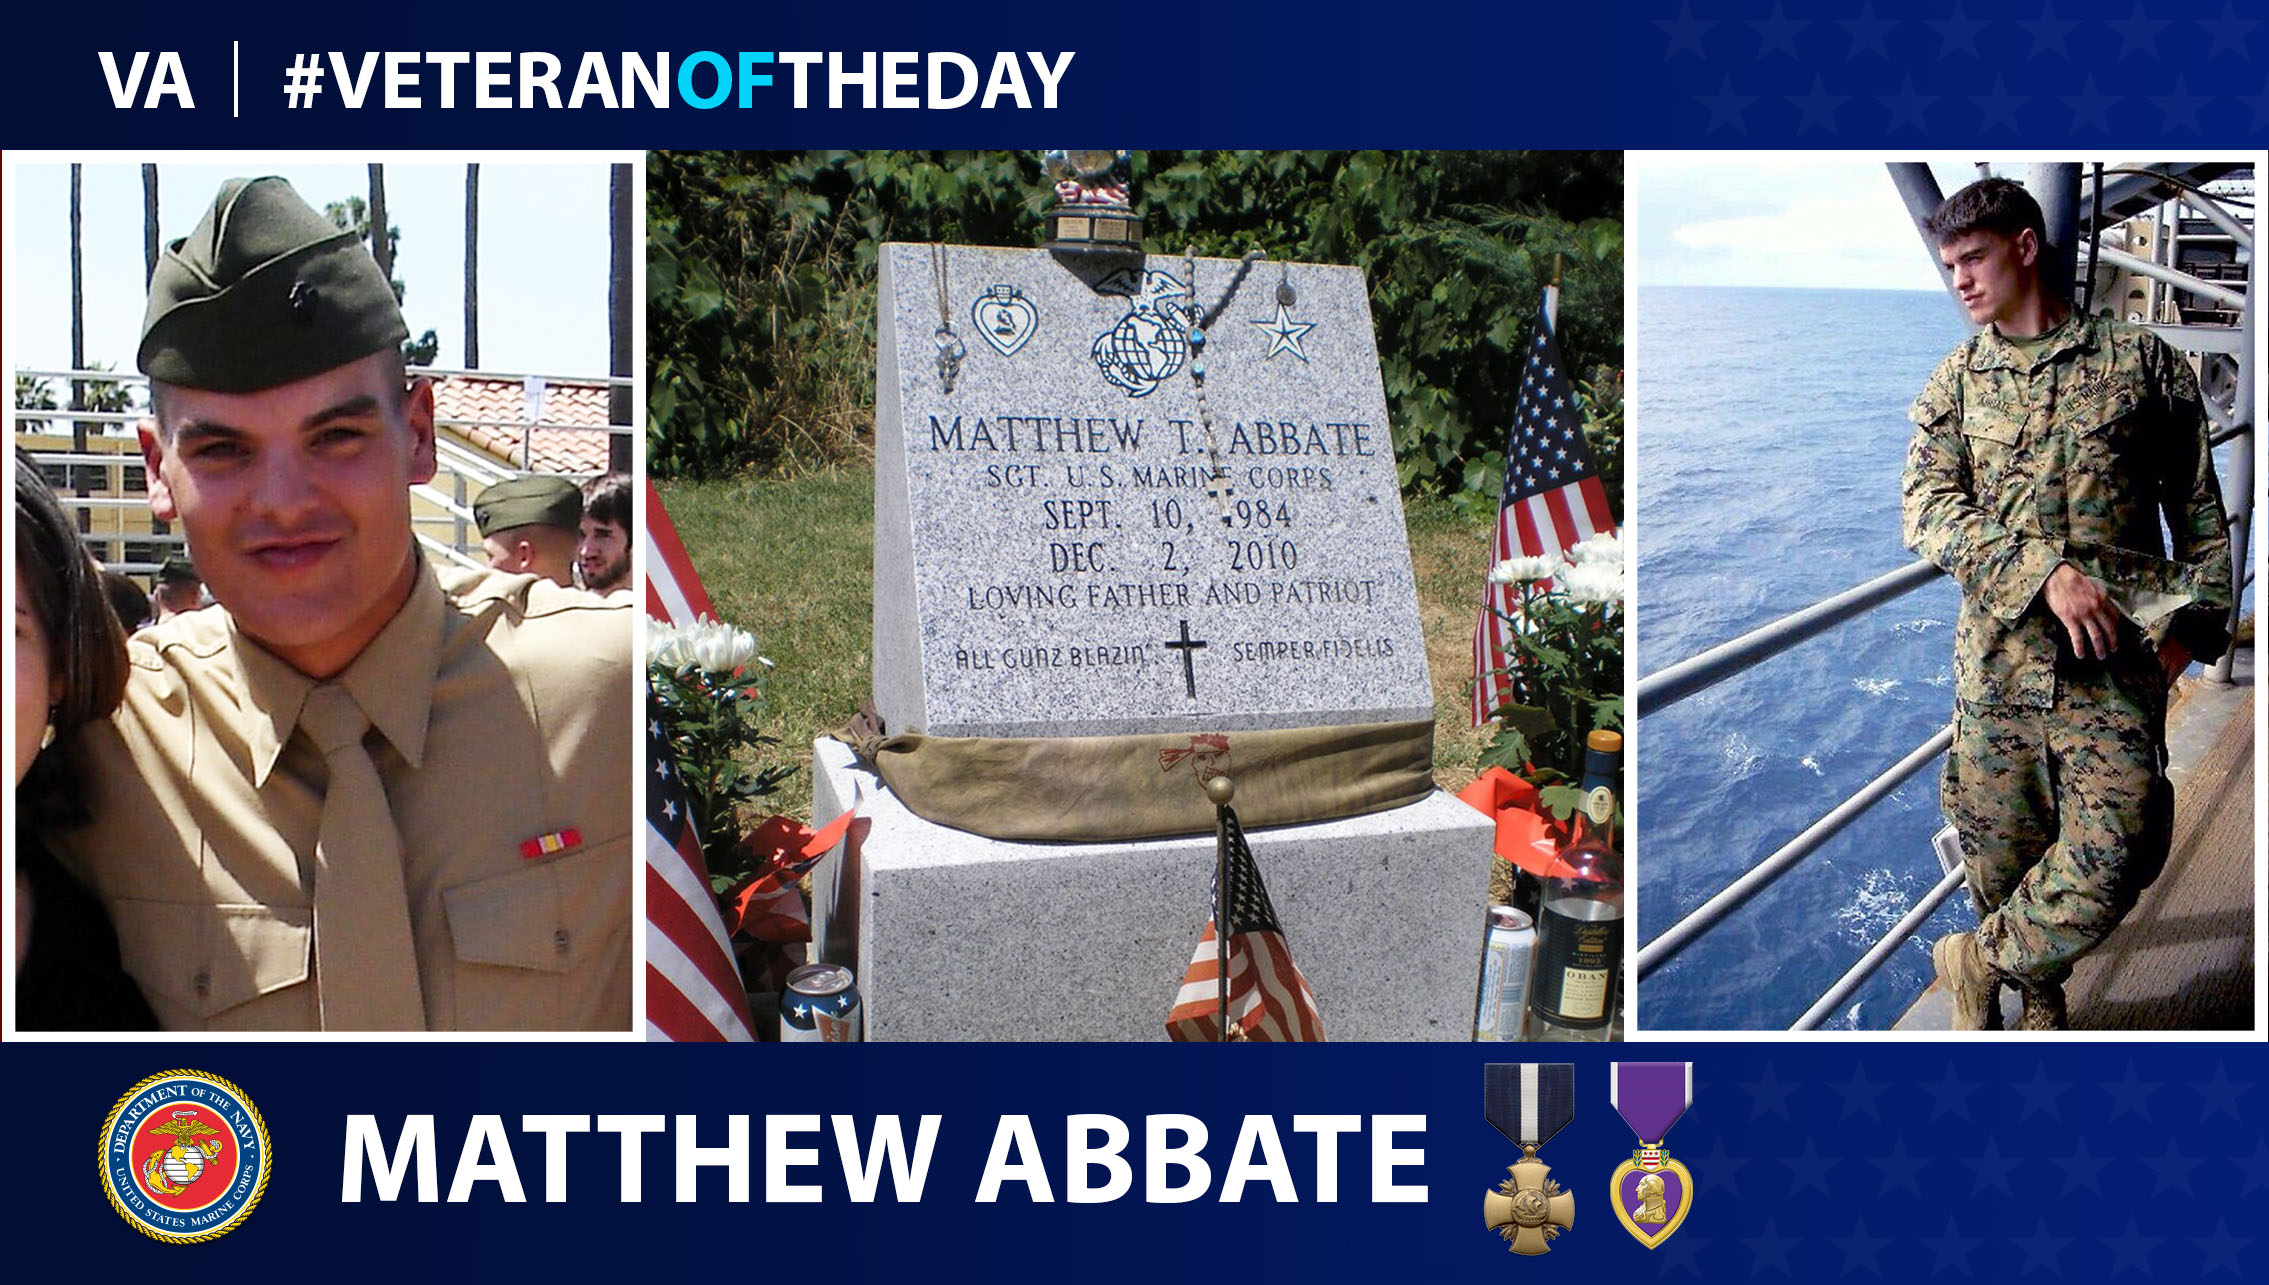 Marine Corps Veteran Matthew Thomas Abbate is today's Veteran of the Day.